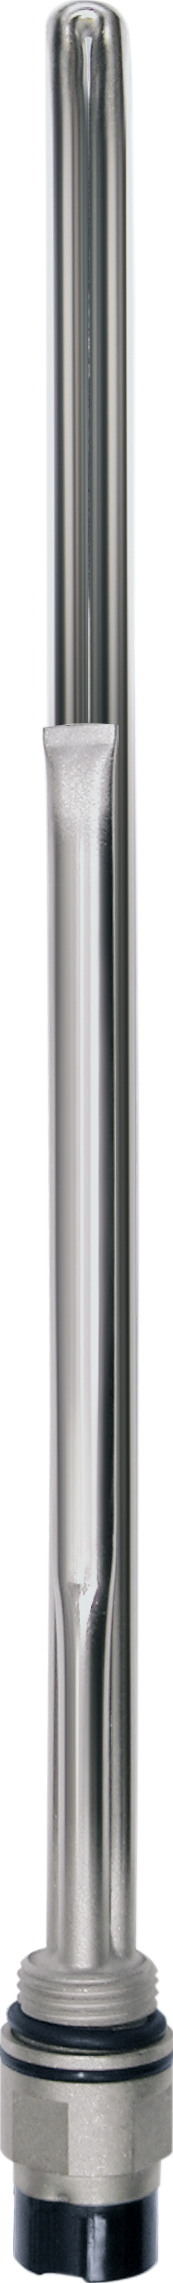 Нагревательный элемент Terma Split 600 w с блоком управления KTX4 белый, спиральный кабель с вилкой